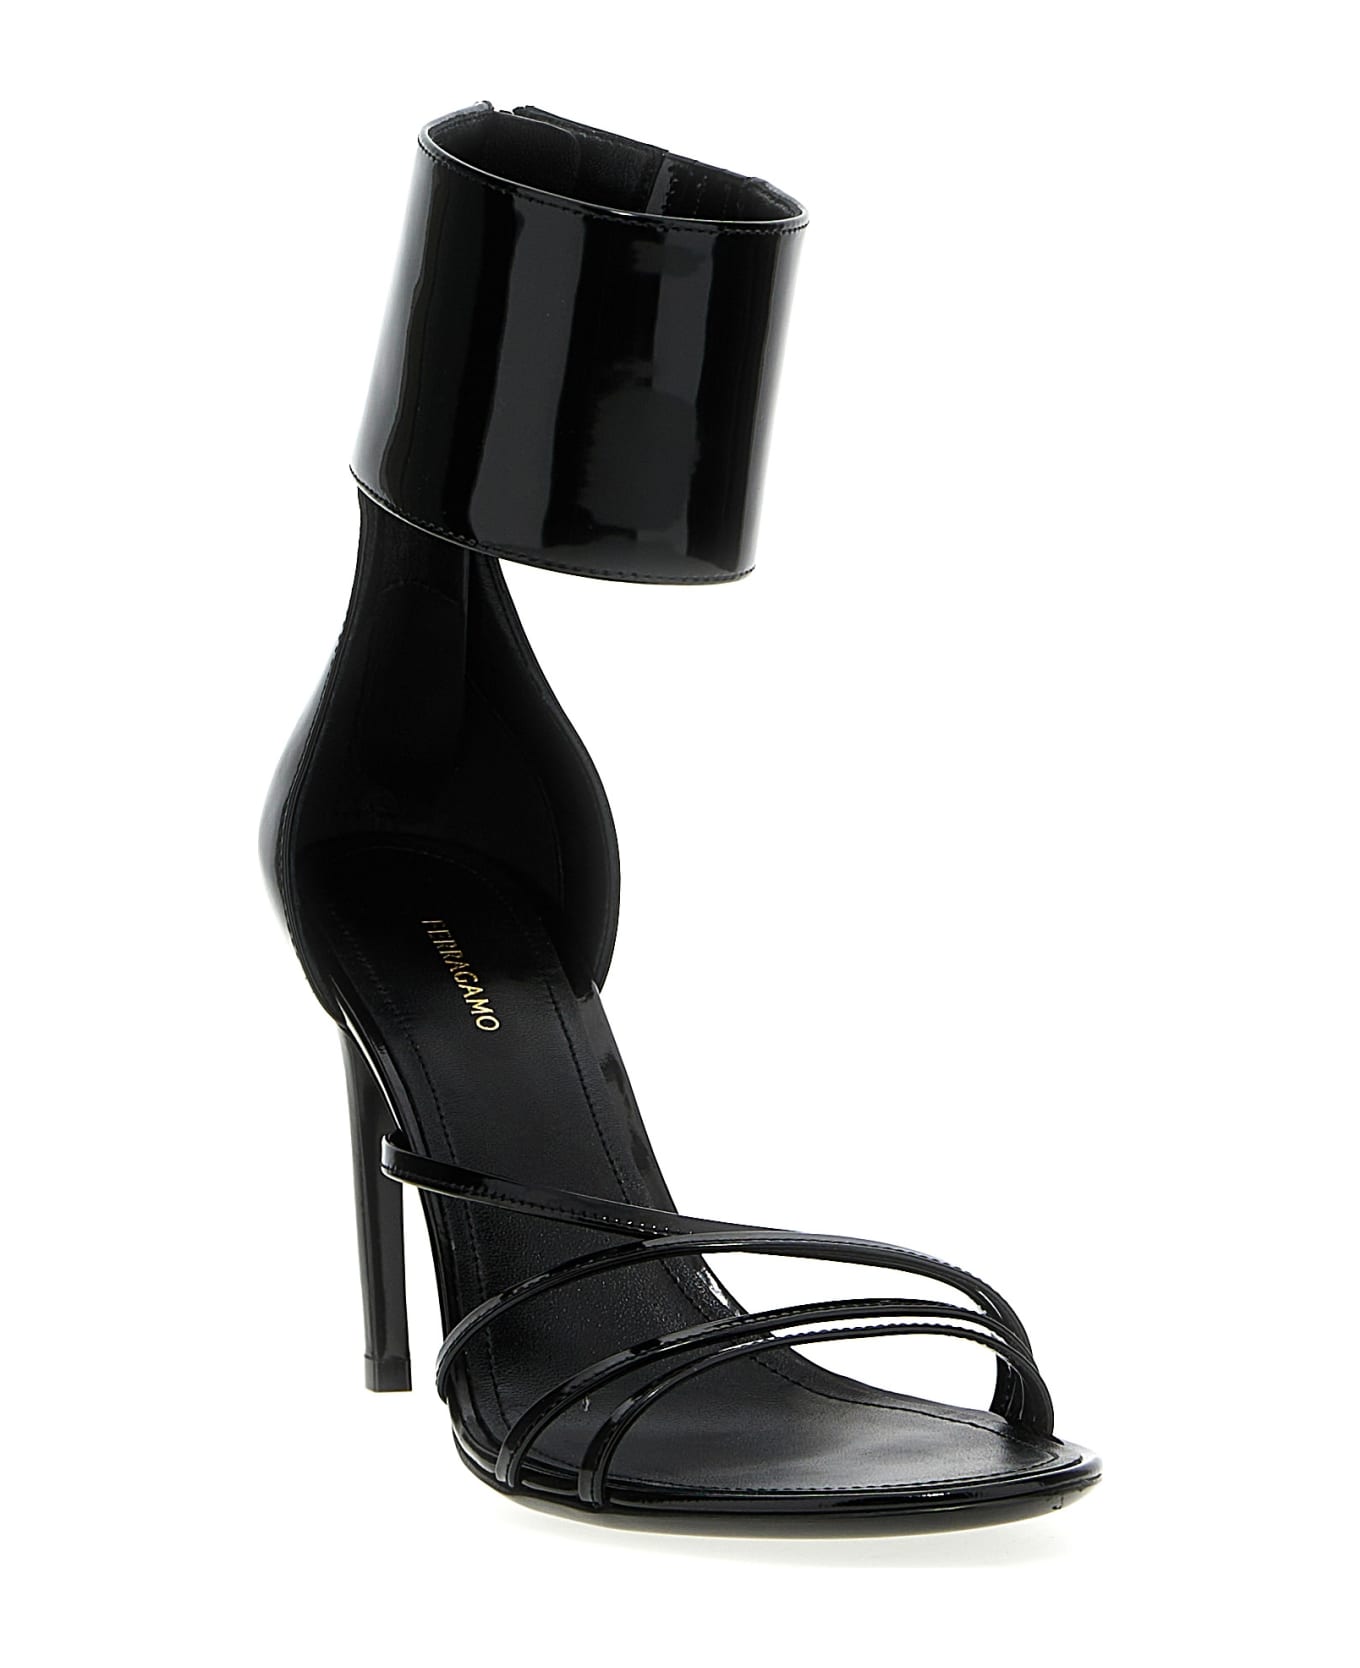 Ferragamo 'clethra' Sandals - Black   サンダル